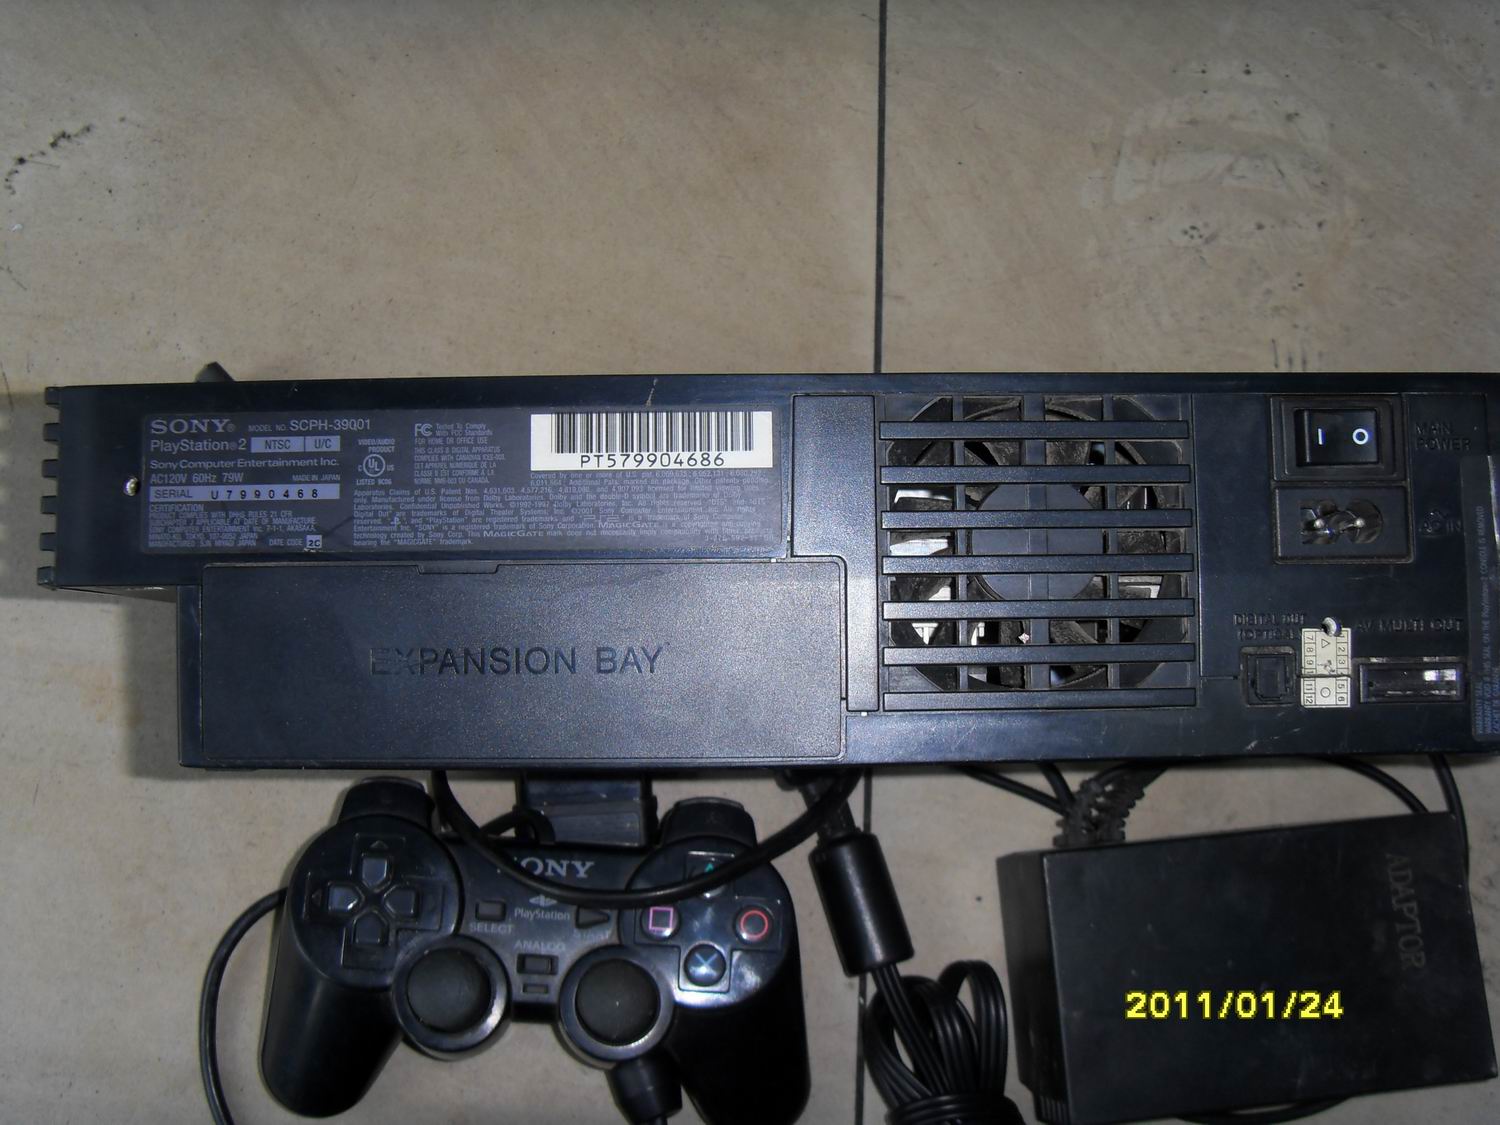 PS2 39001硬盘机一套 - 580元 